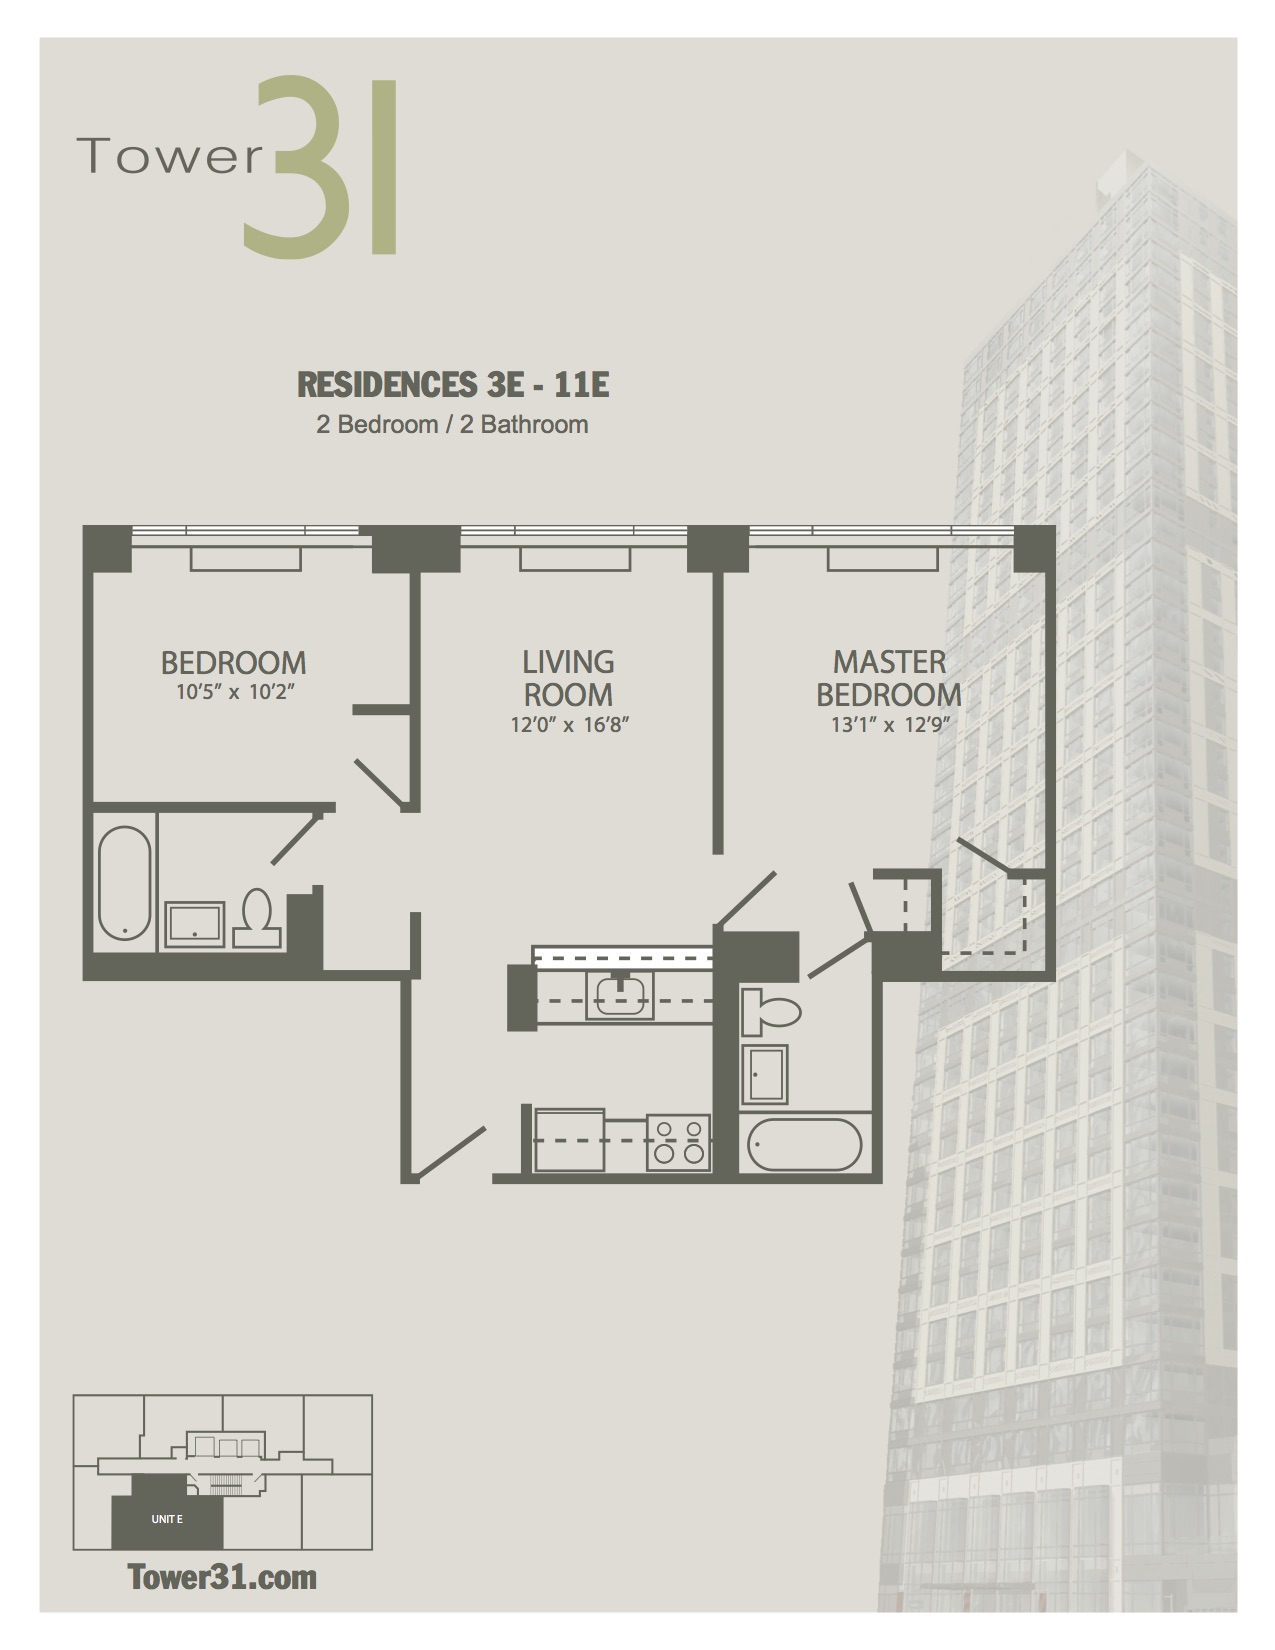 Residence E Floors 3-11